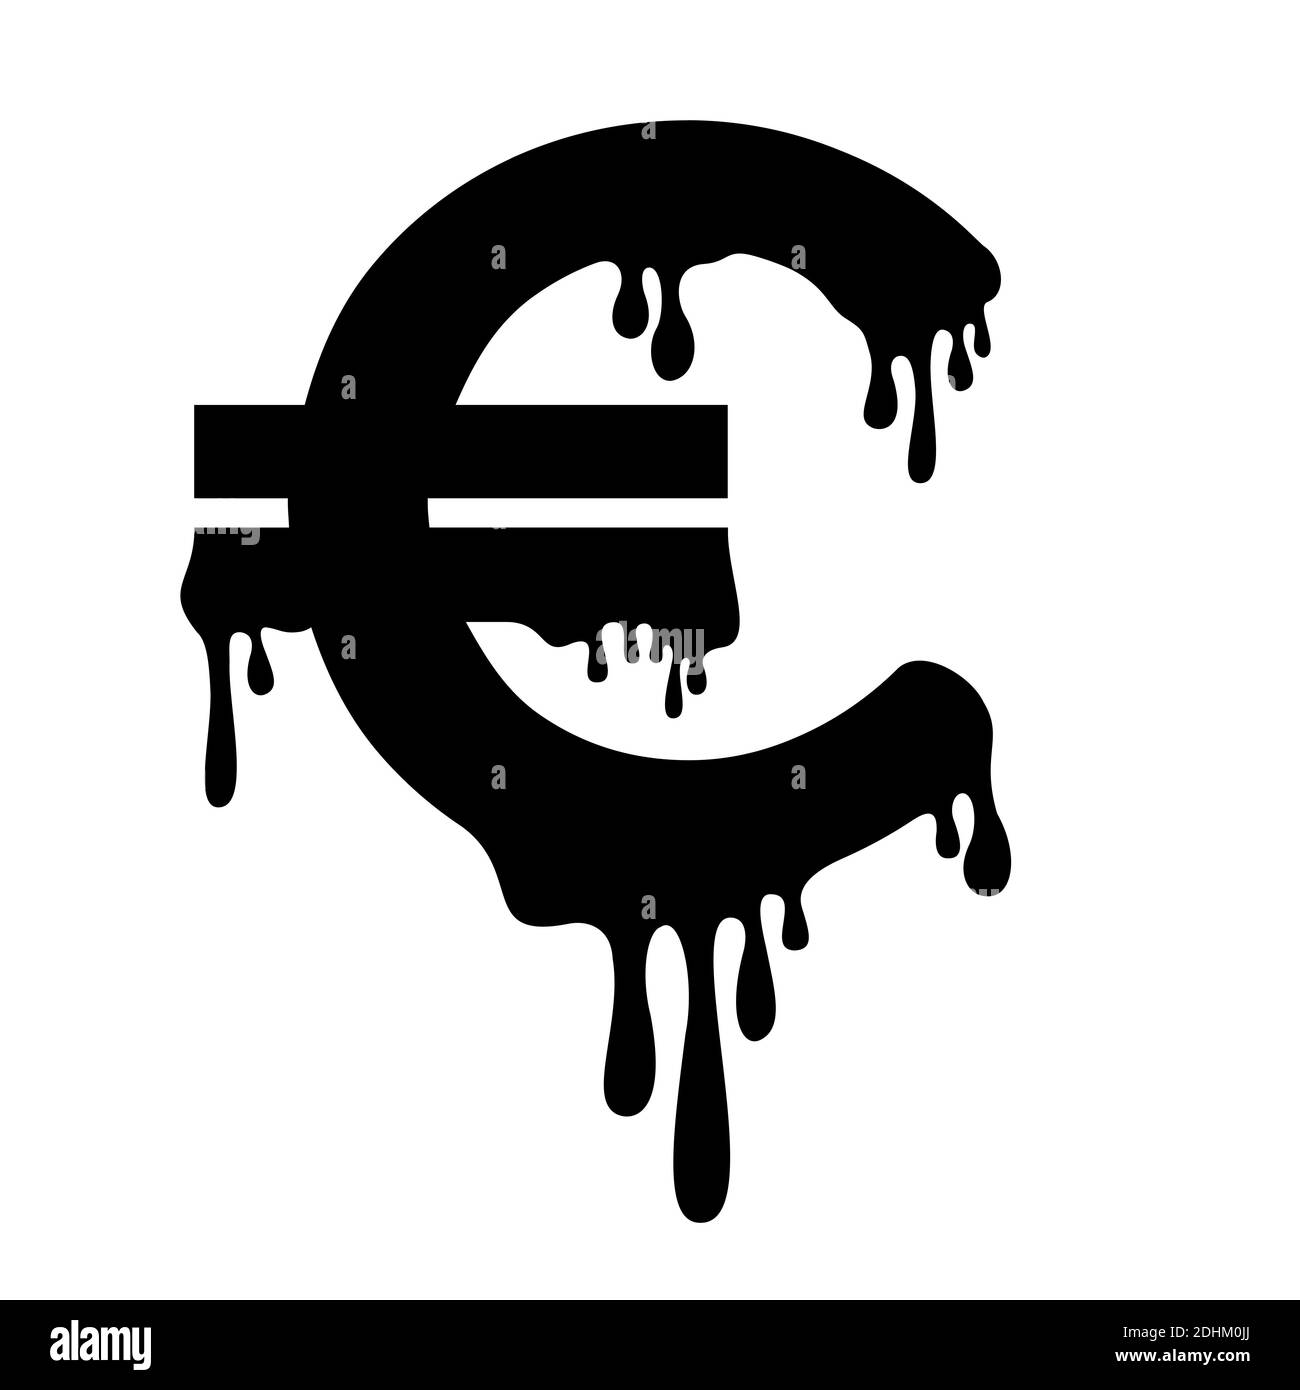 L'euro est en train de fondre - effondrement économique et effondrement de la monnaie de l'Union européenne - récession, inflation, perte de valeur, crise financière de l'UE et de l'UE Banque D'Images